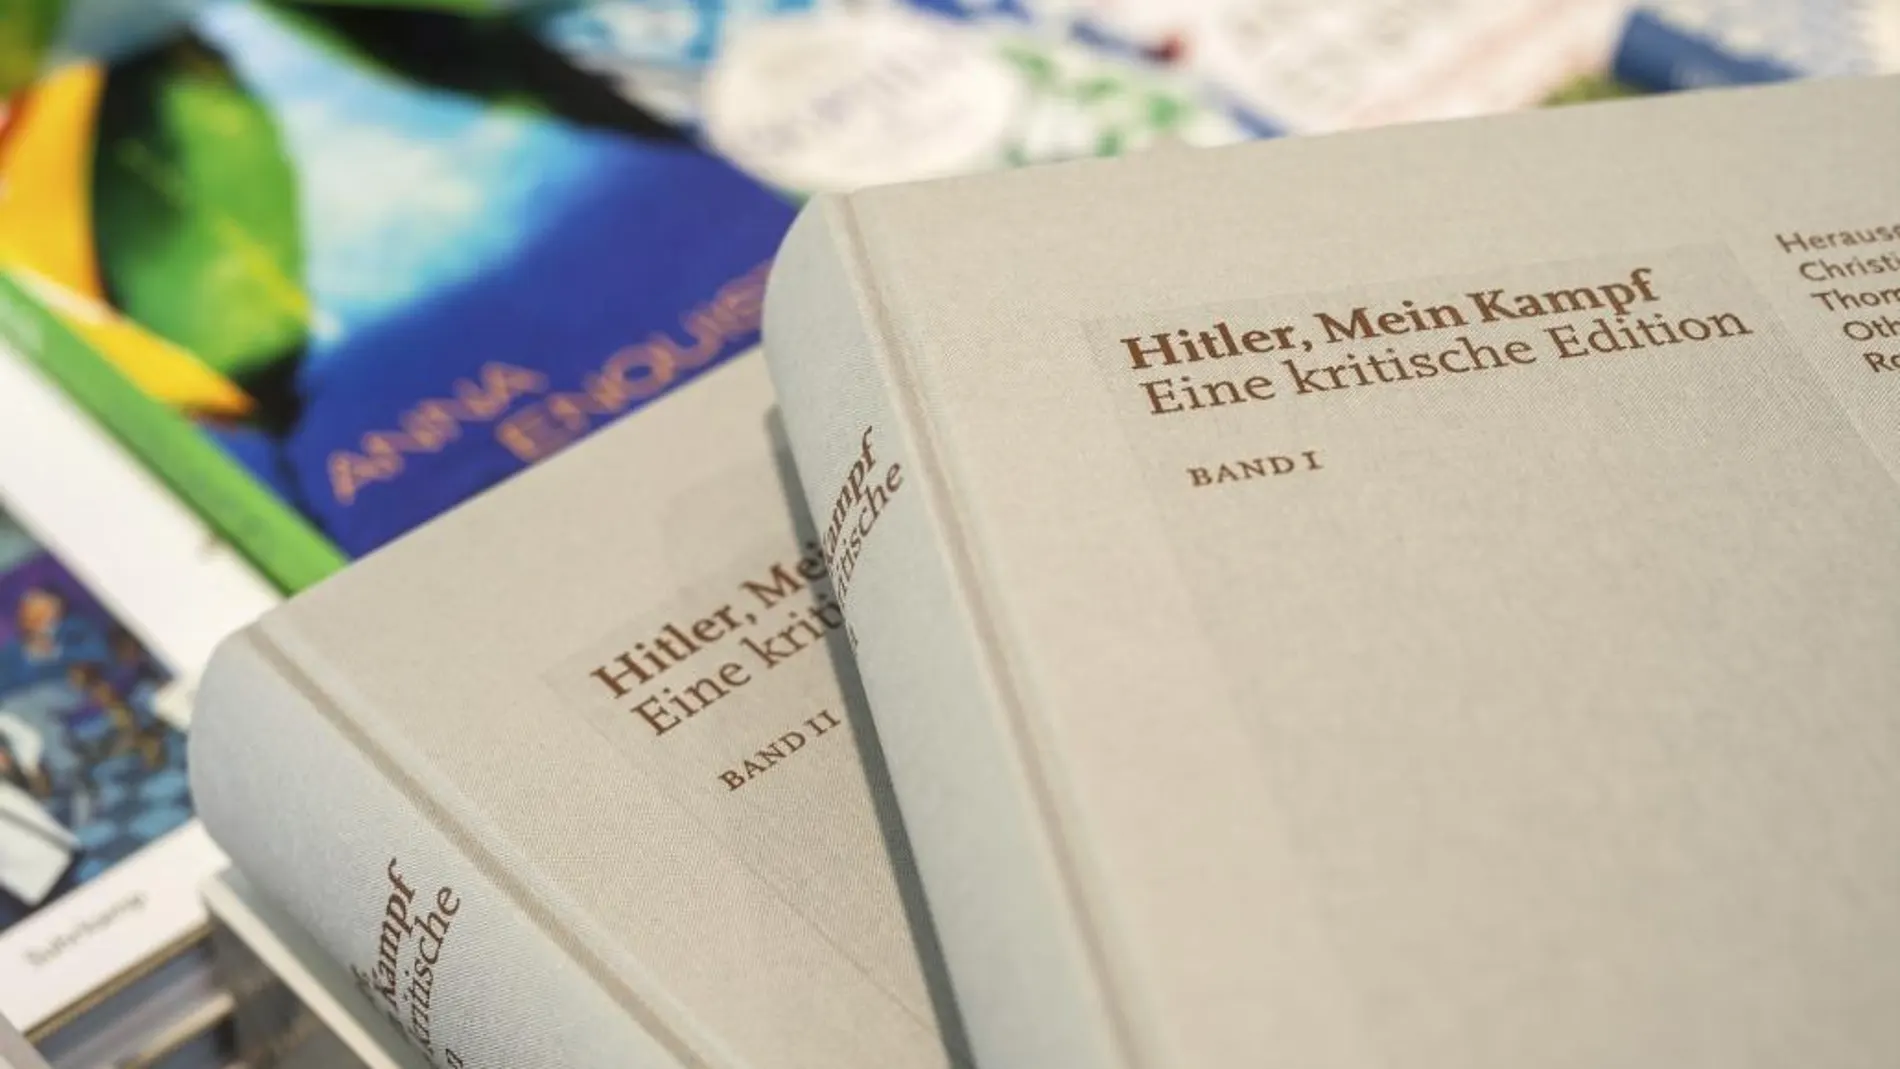 Copias de la edición crítica de "Hitler, Mein Kampf", expuestos sobre una mesa durante una rueda de prensa en Múnich (Alemania) el 8 de enero de 2016